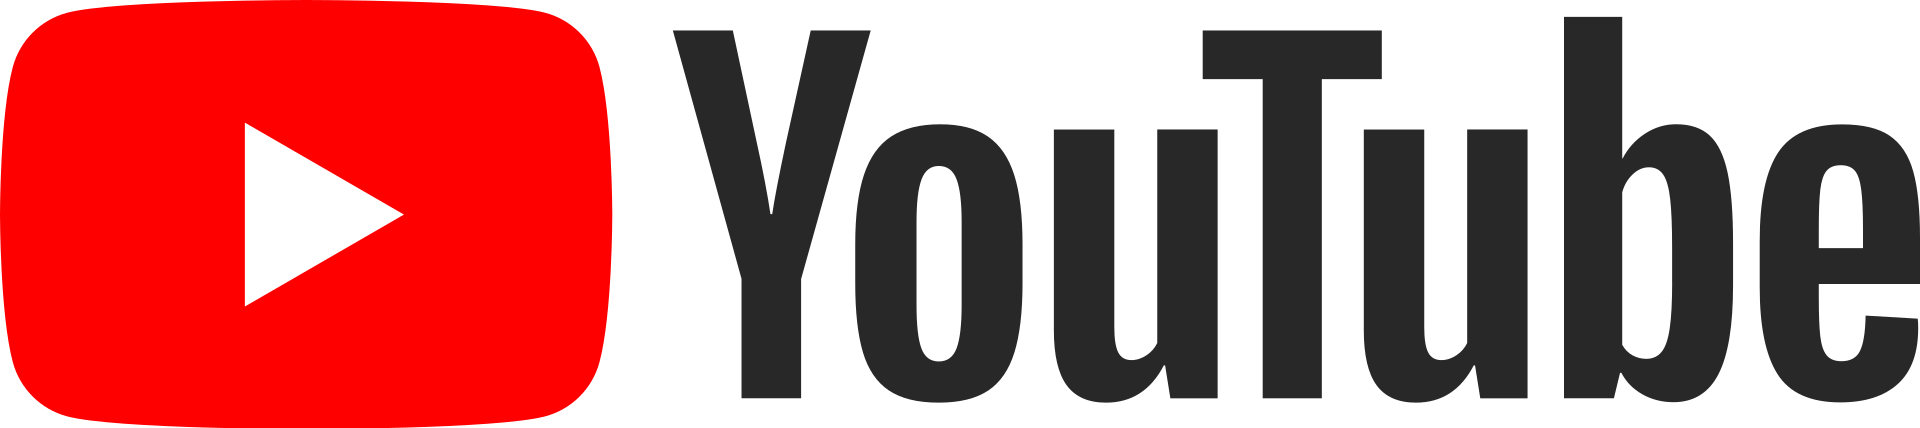 YouTube_Logo_2017.svg-1.png